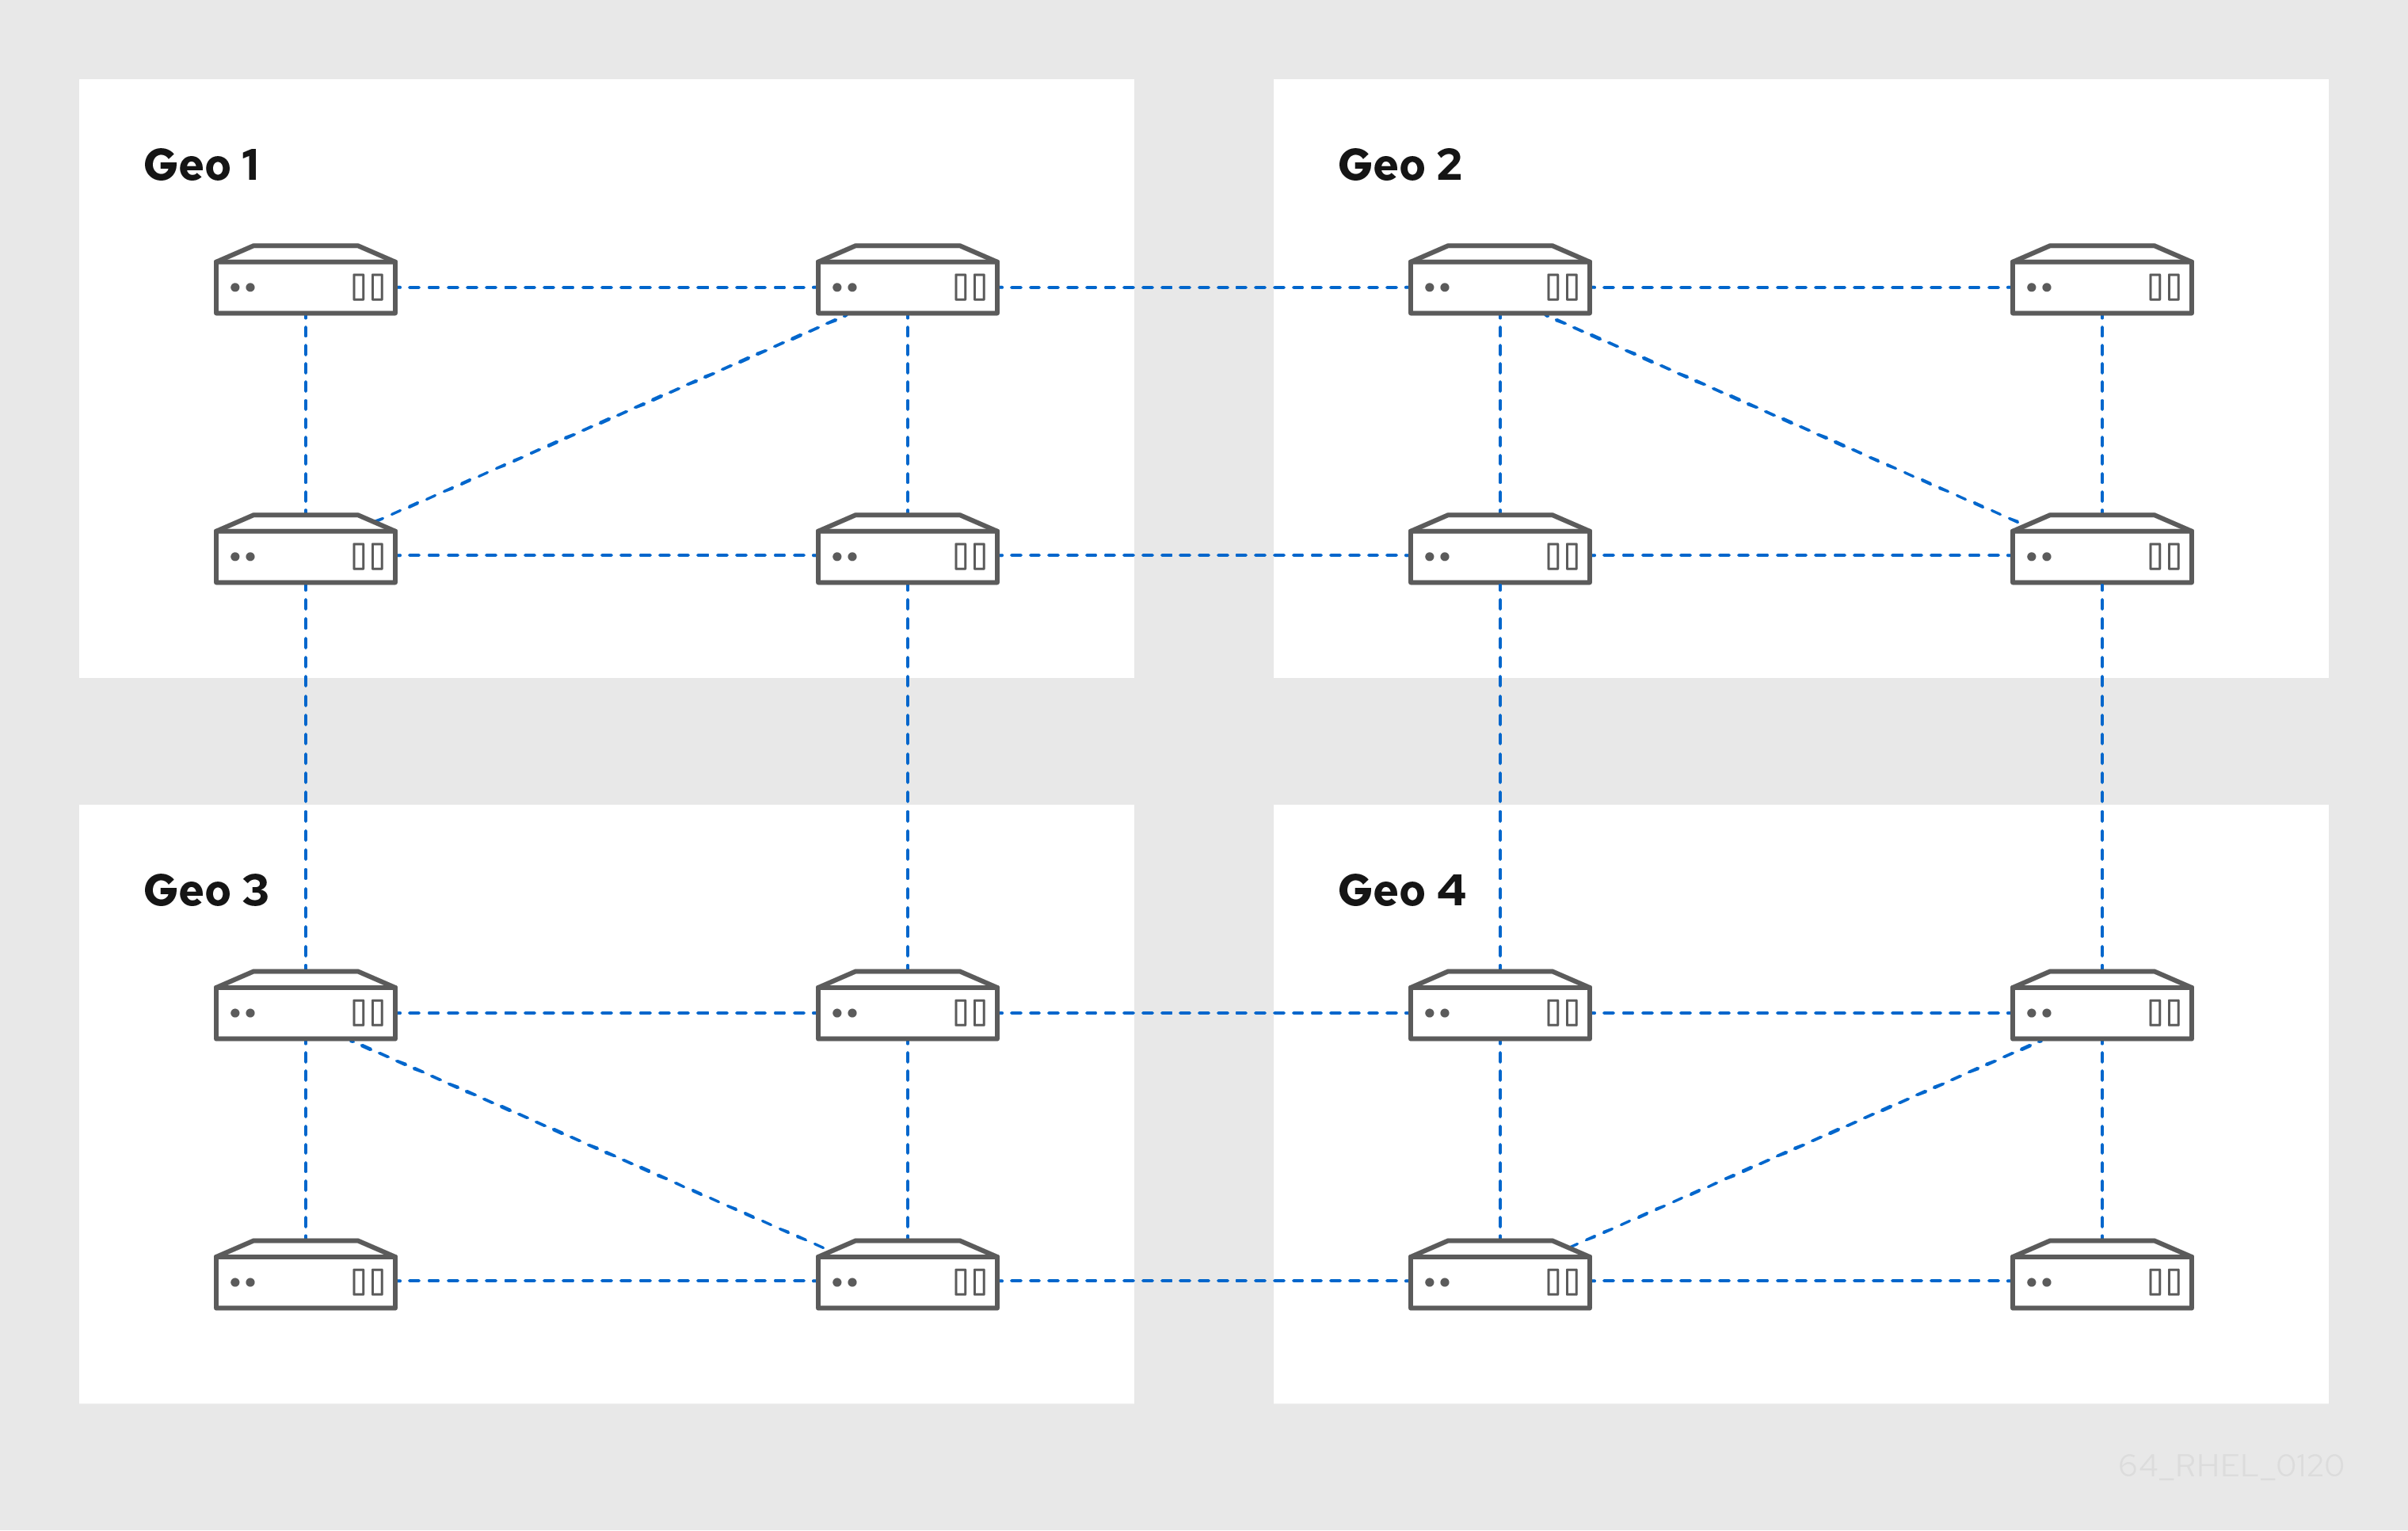 显示 4 个数据中心 - Geo 1 到 4。每个数据中心都有四个服务器通过复制协议互相连接。另外，还有将两个服务器从 Geo 1 连接到 Geo 2 中的两台服务器的复制协议。这个模式将继续，在 Geo 2 中有两台服务器连接到 Geo 3 中的两个服务器，Geo 3 中的两台服务器连接到 Geo 4。这连接每个数据中心，因此每台服务器最多只能从另一个地理位置相距 3 个跃点。